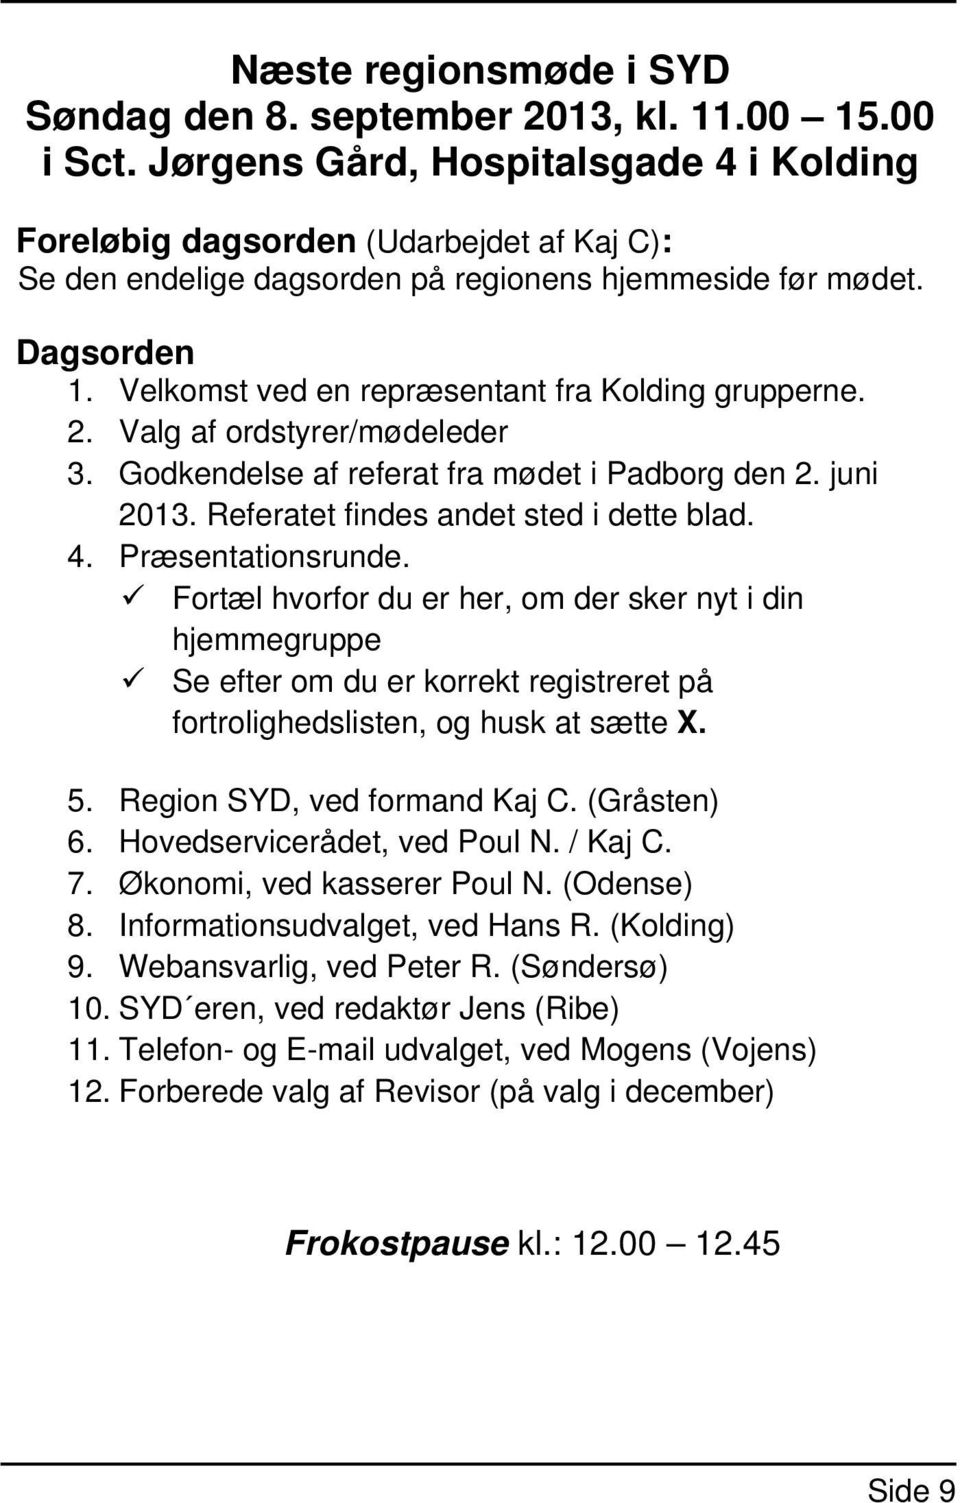 Velkomst ved en repræsentant fra Kolding grupperne. 2. Valg af ordstyrer/mødeleder 3. Godkendelse af referat fra mødet i Padborg den 2. juni 2013. Referatet findes andet sted i dette blad. 4.